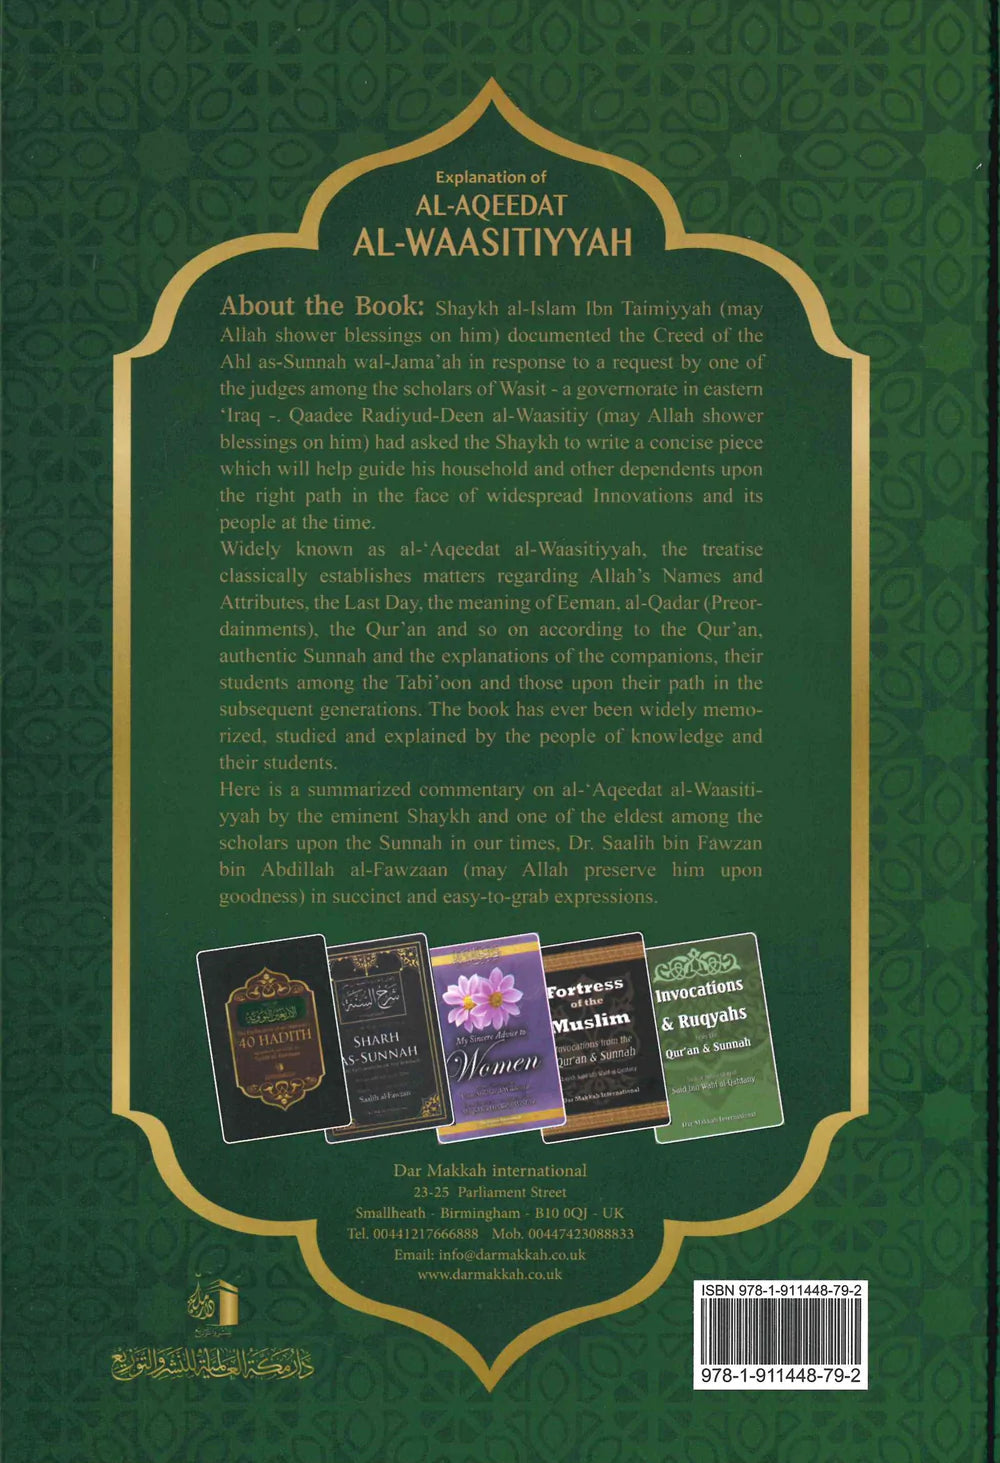 Explanation of al-Aqeedat al-Waasitiyyah